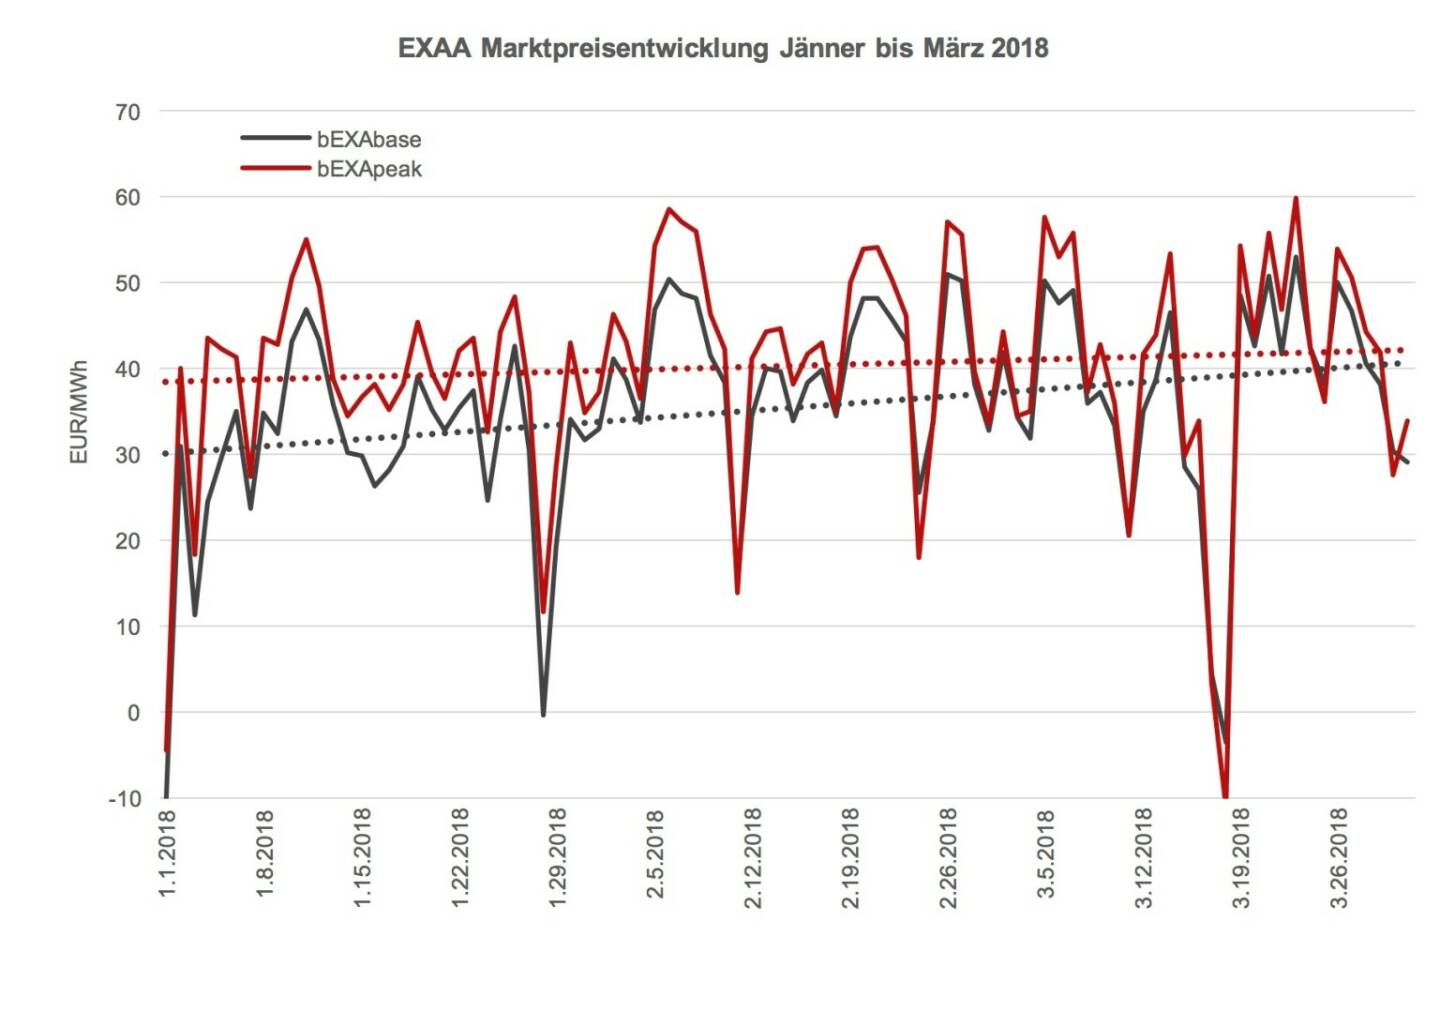 Die Marktpreisentwicklung der EXAA von Jänner bis März 2018 zeigt, dass der Spread zwischen Grund- und Spitzenlast zusammen geht. Dies lässt sich auf einen höheren Anteil an Photovoltaik-Einspeisung zurückzuführen. Die Tage werden länger und heller.